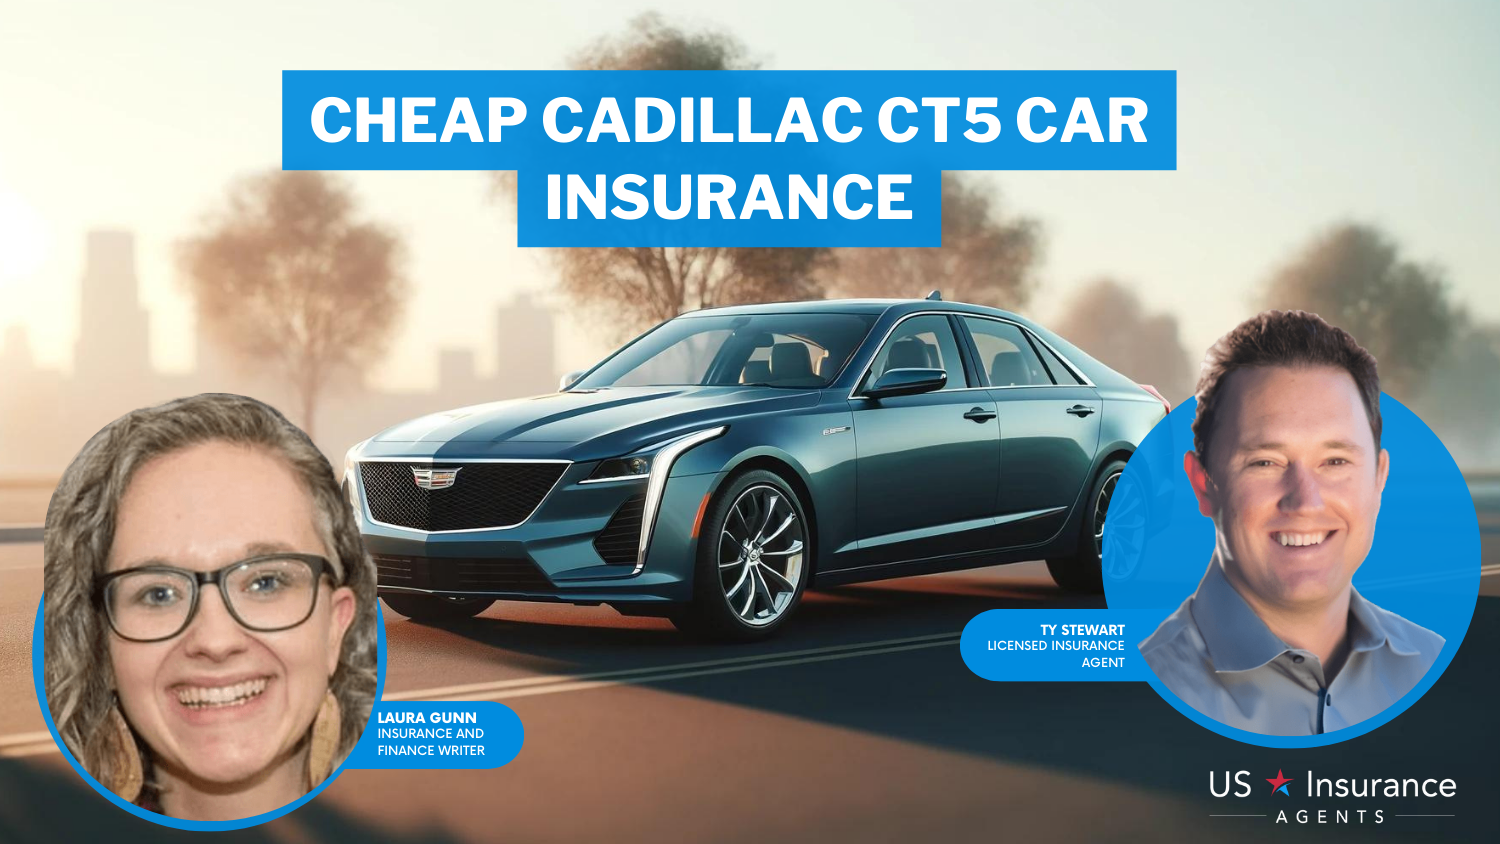 Progressive, State Farm and Allstate: Cheap Cadillac CT5 Car Insurance